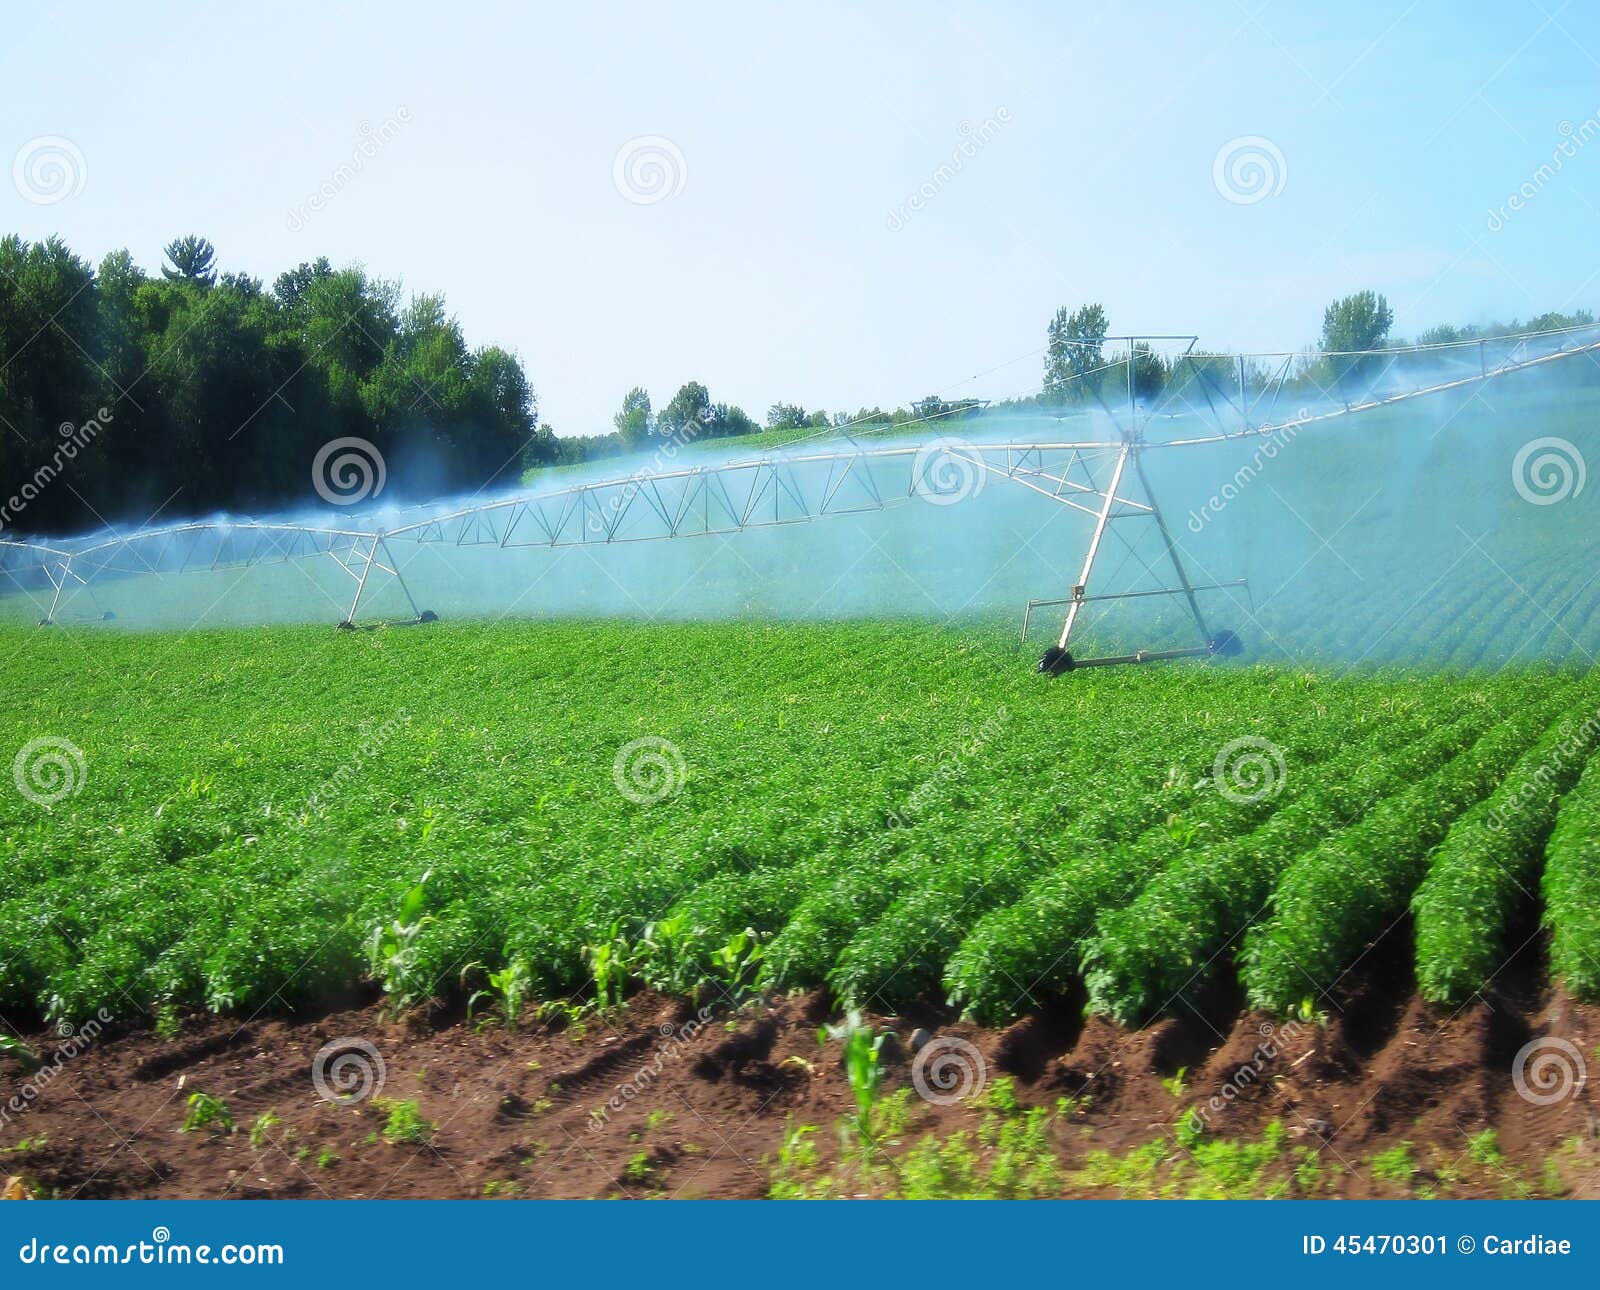 irrigation system watering crops farmland farm field industrial